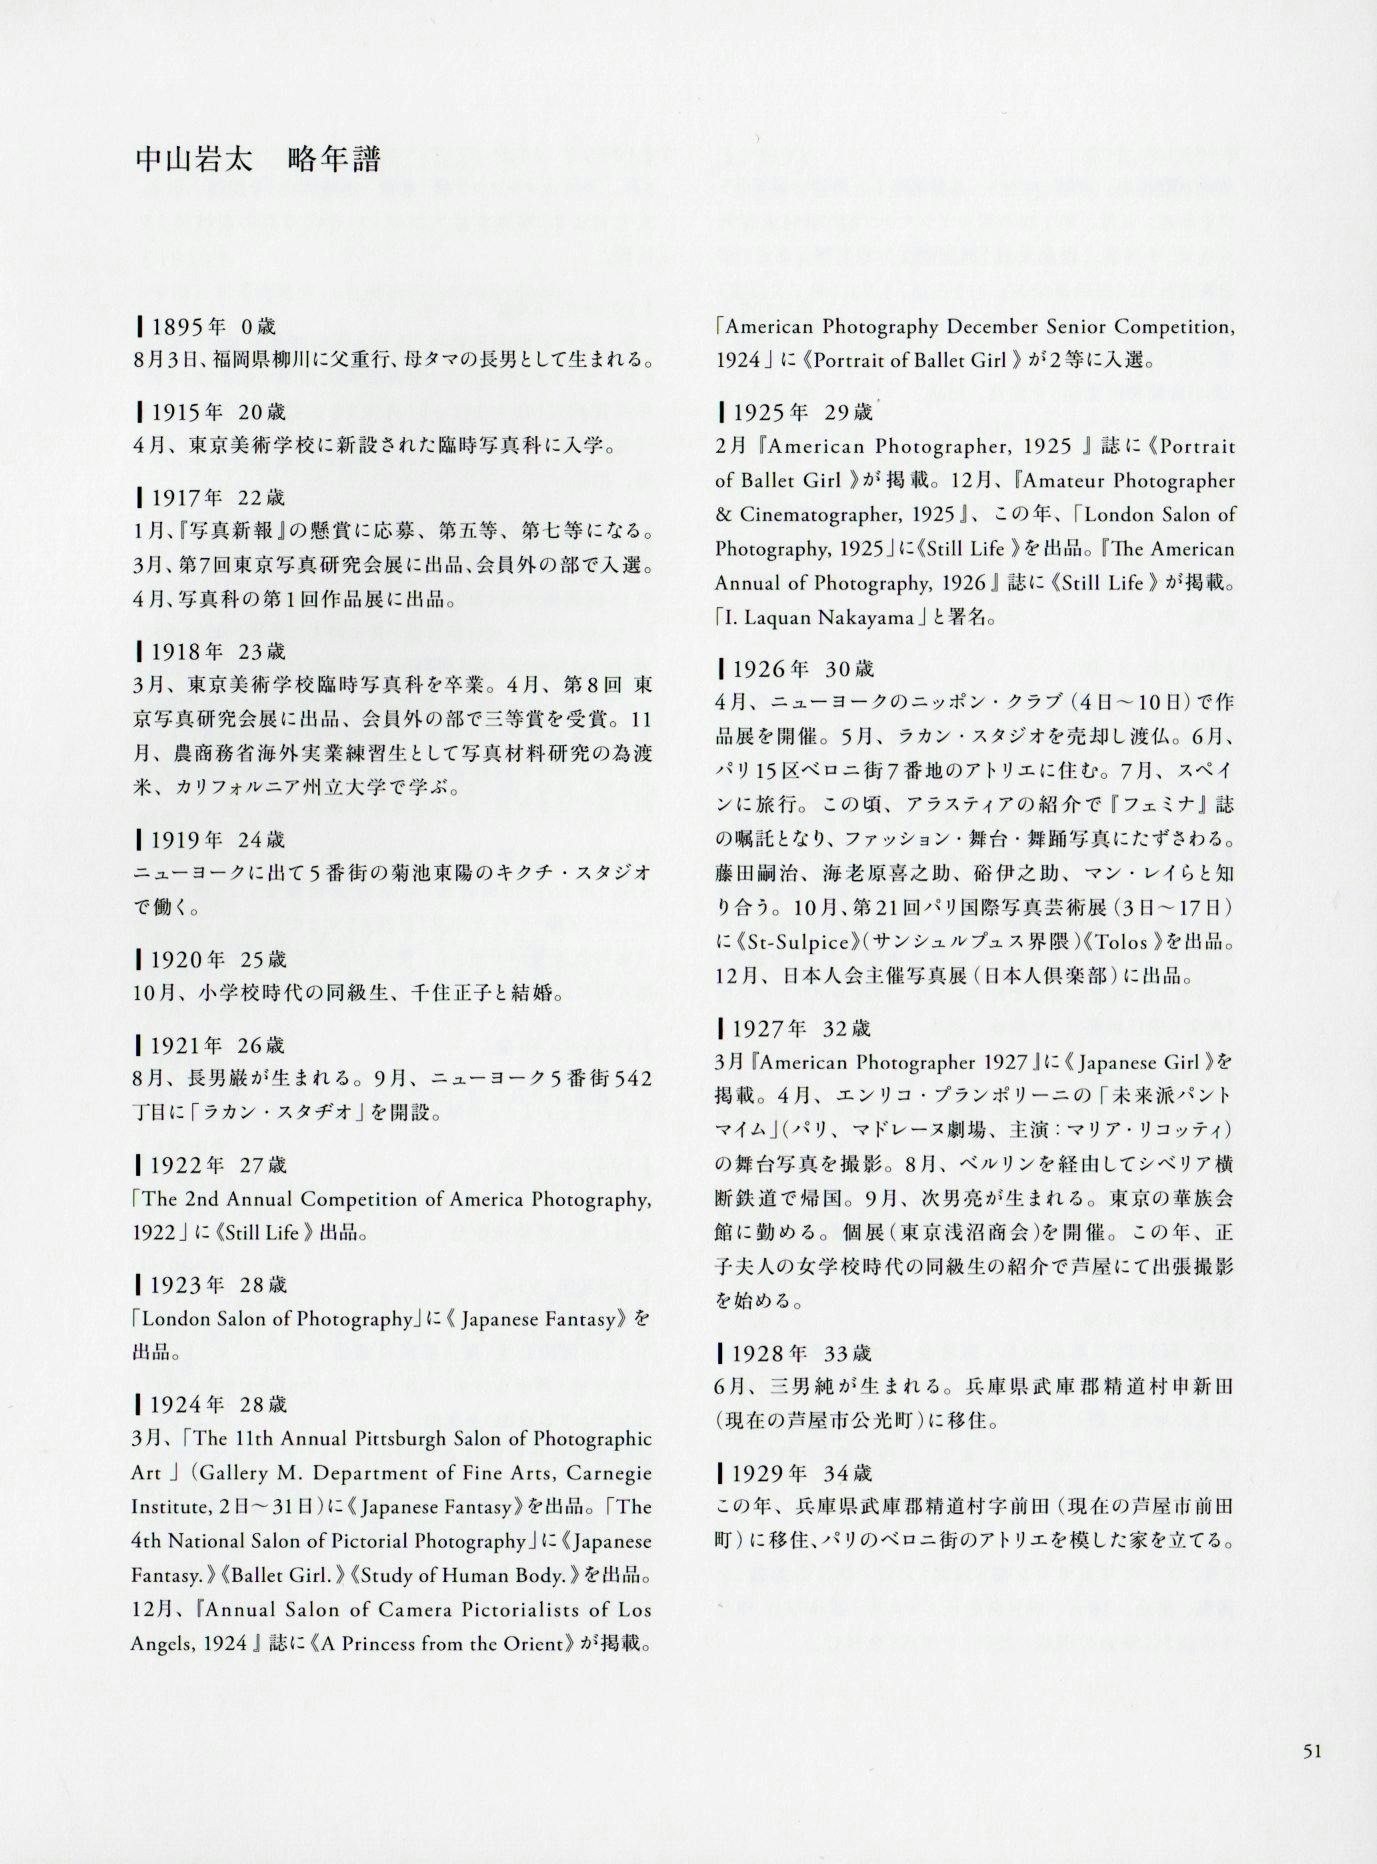 中山岩太略年譜。1895年〜1949年までと、没後の展覧会や主な刊行物を2010年まで編纂。